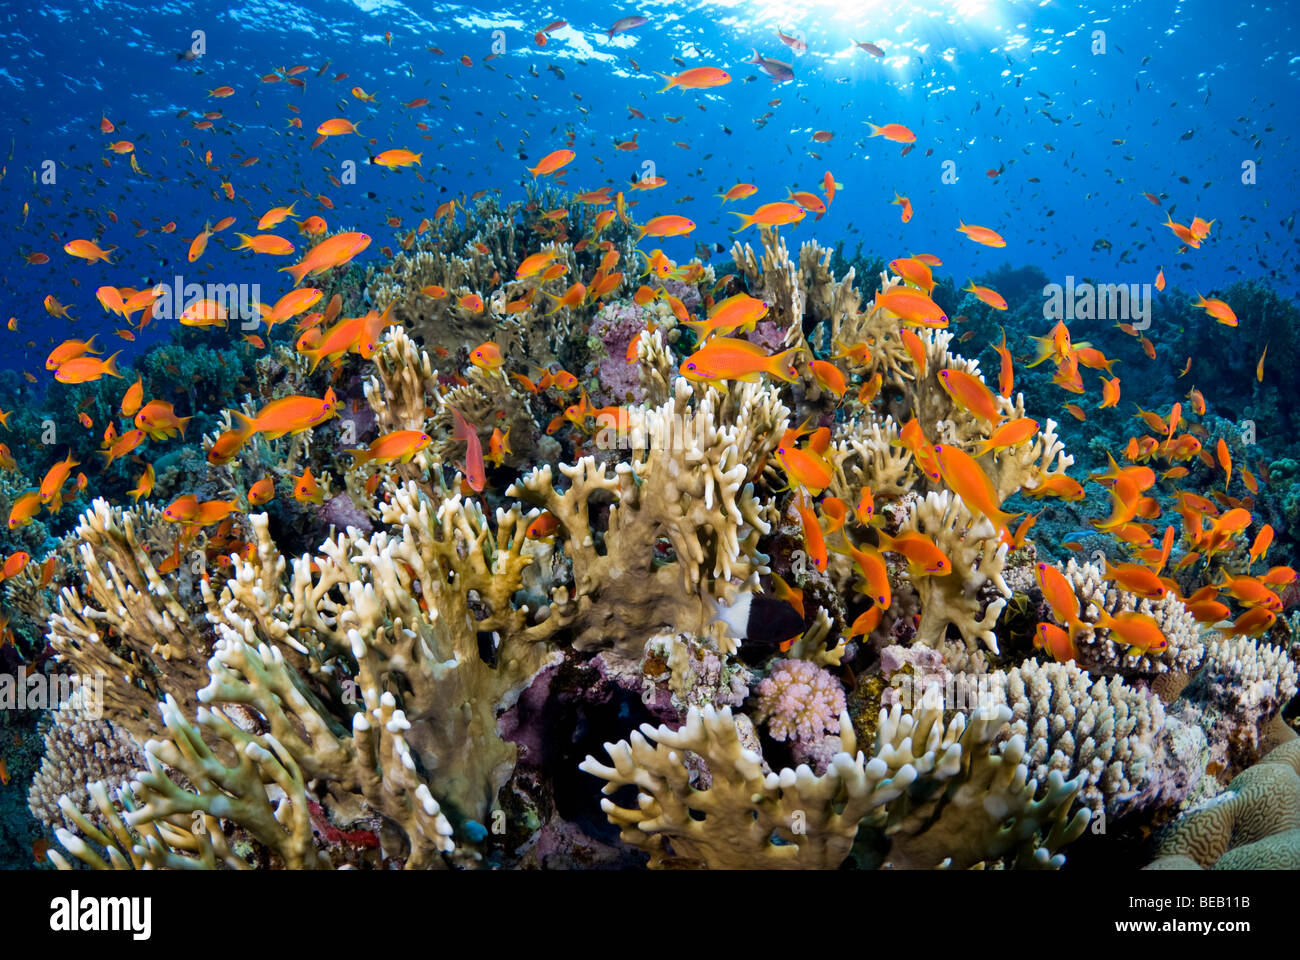 Amanecer en el arrecife de coral de fuego con cardumen de anthias. Foto de stock